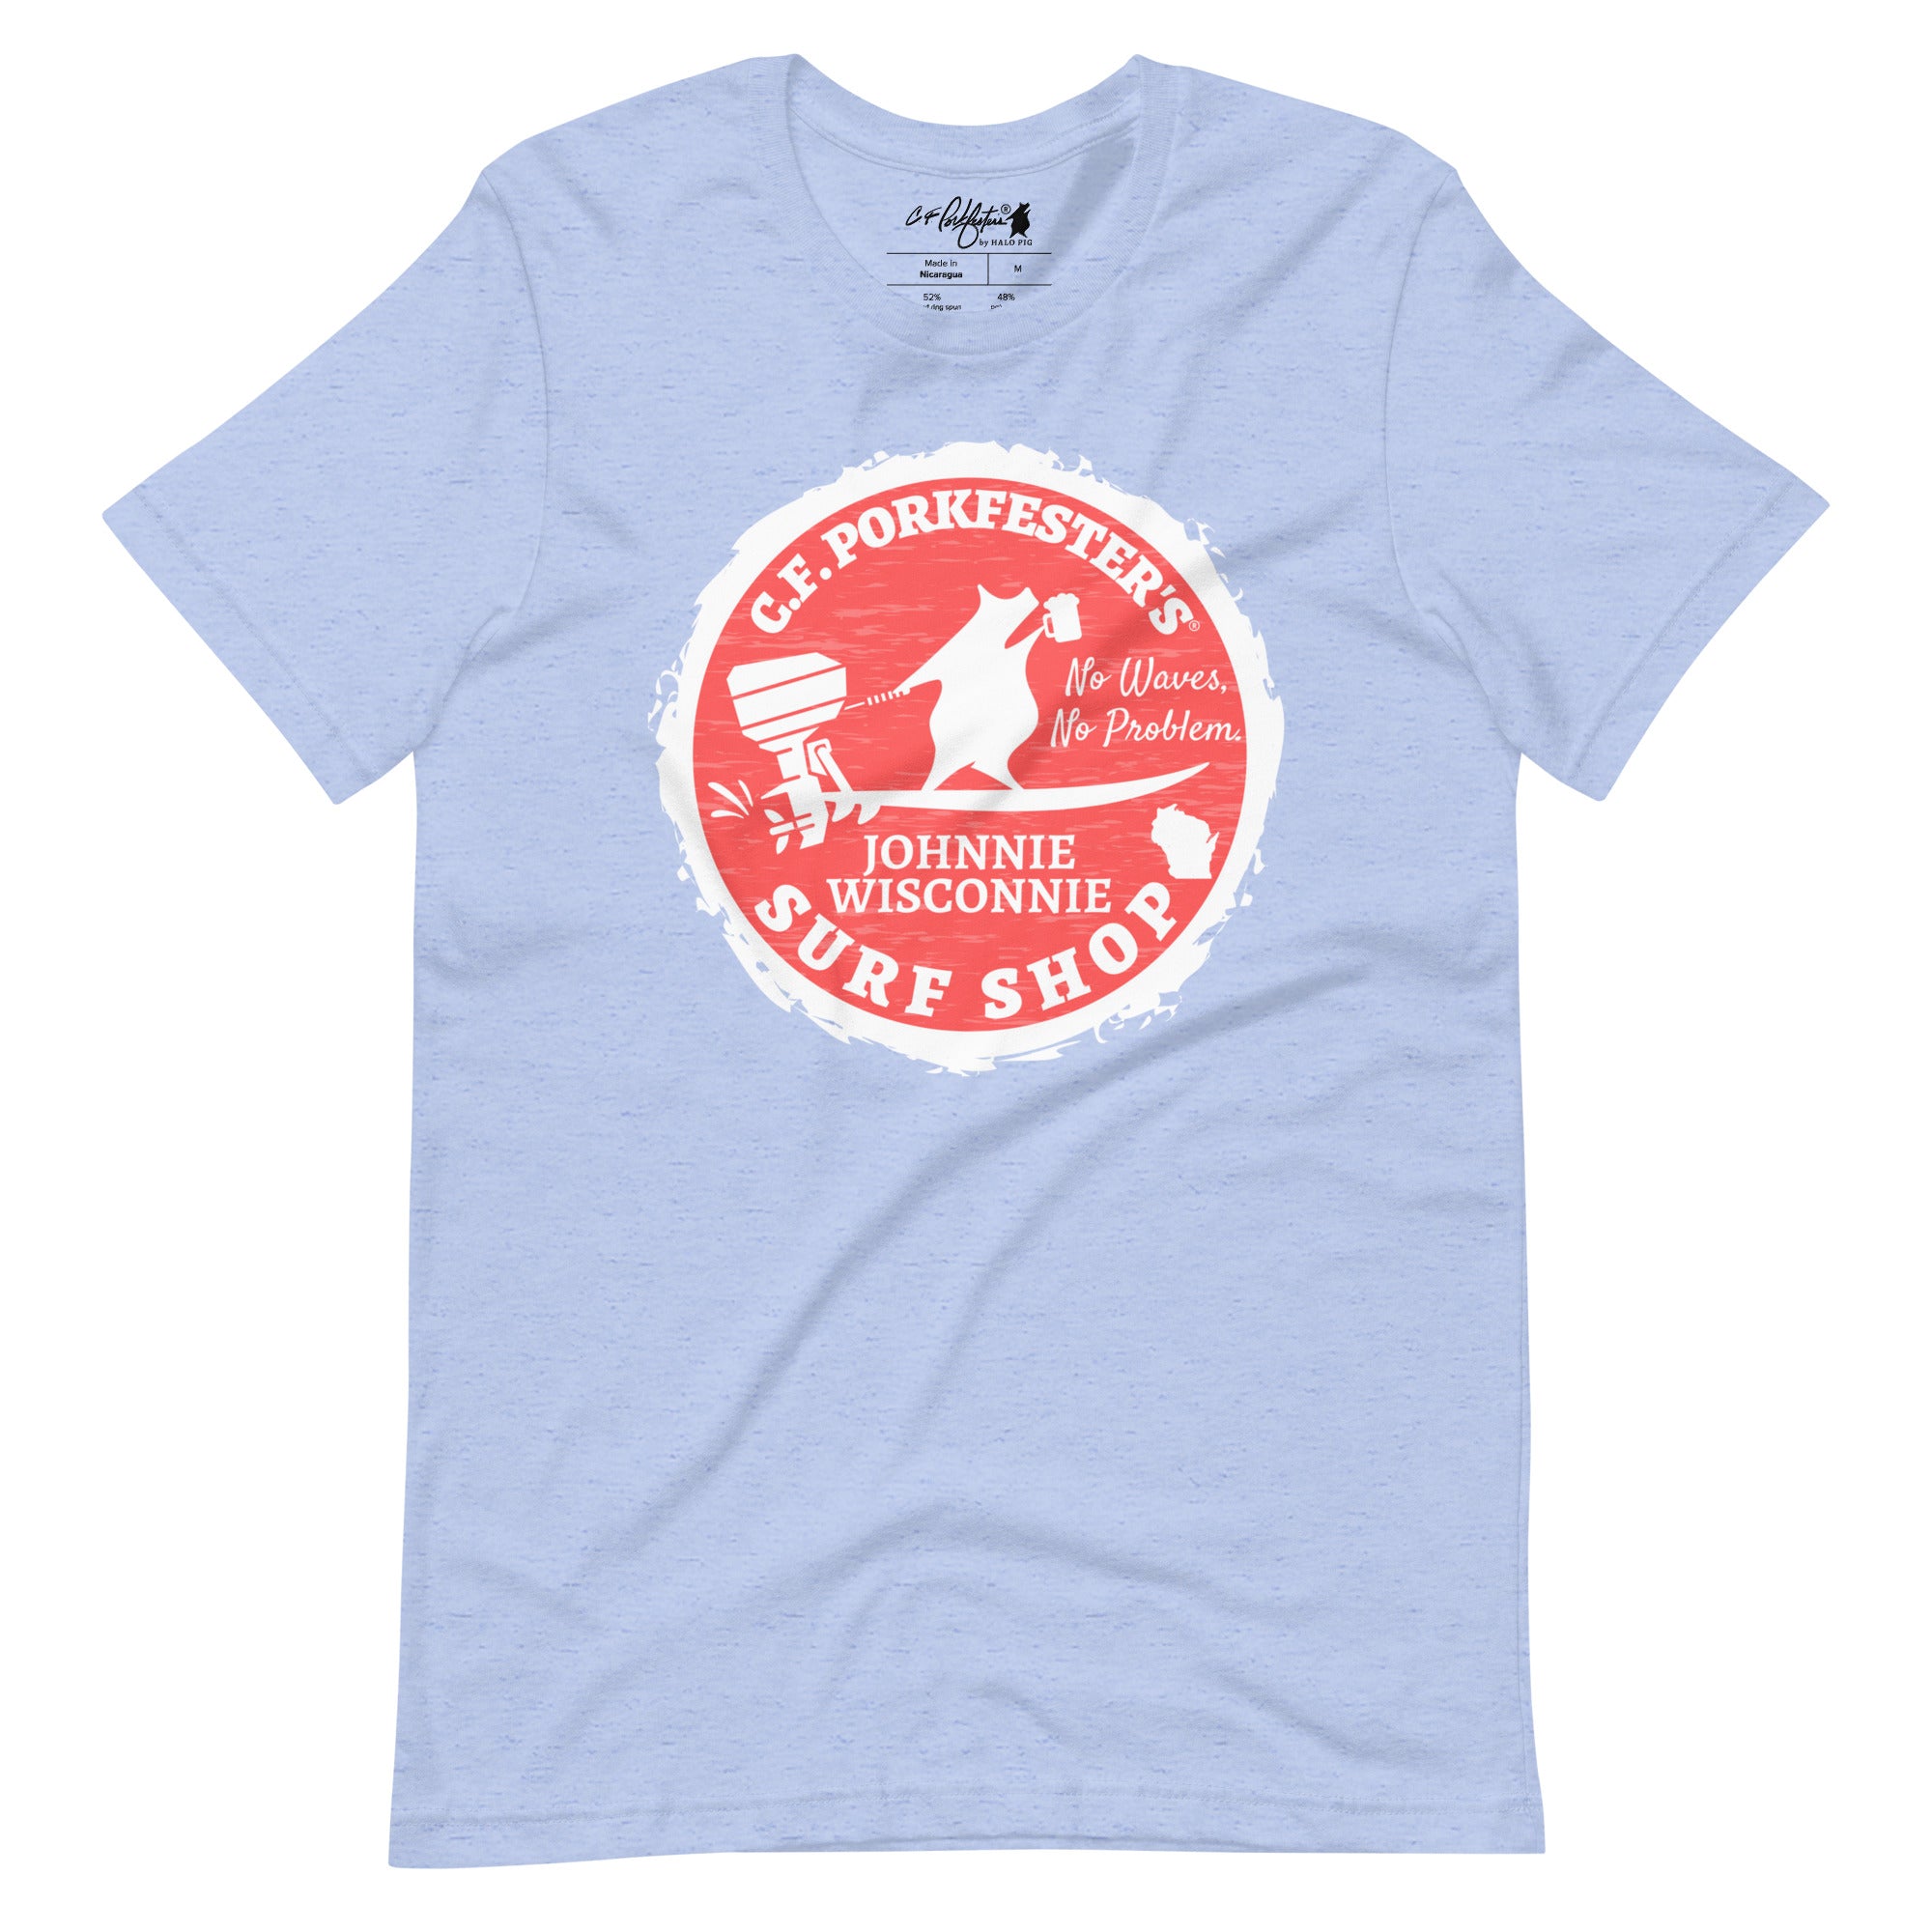 C.F. Porkfester's "Johnnie Wisconnie Surf Shop" Men's/Unisex T-Shirt